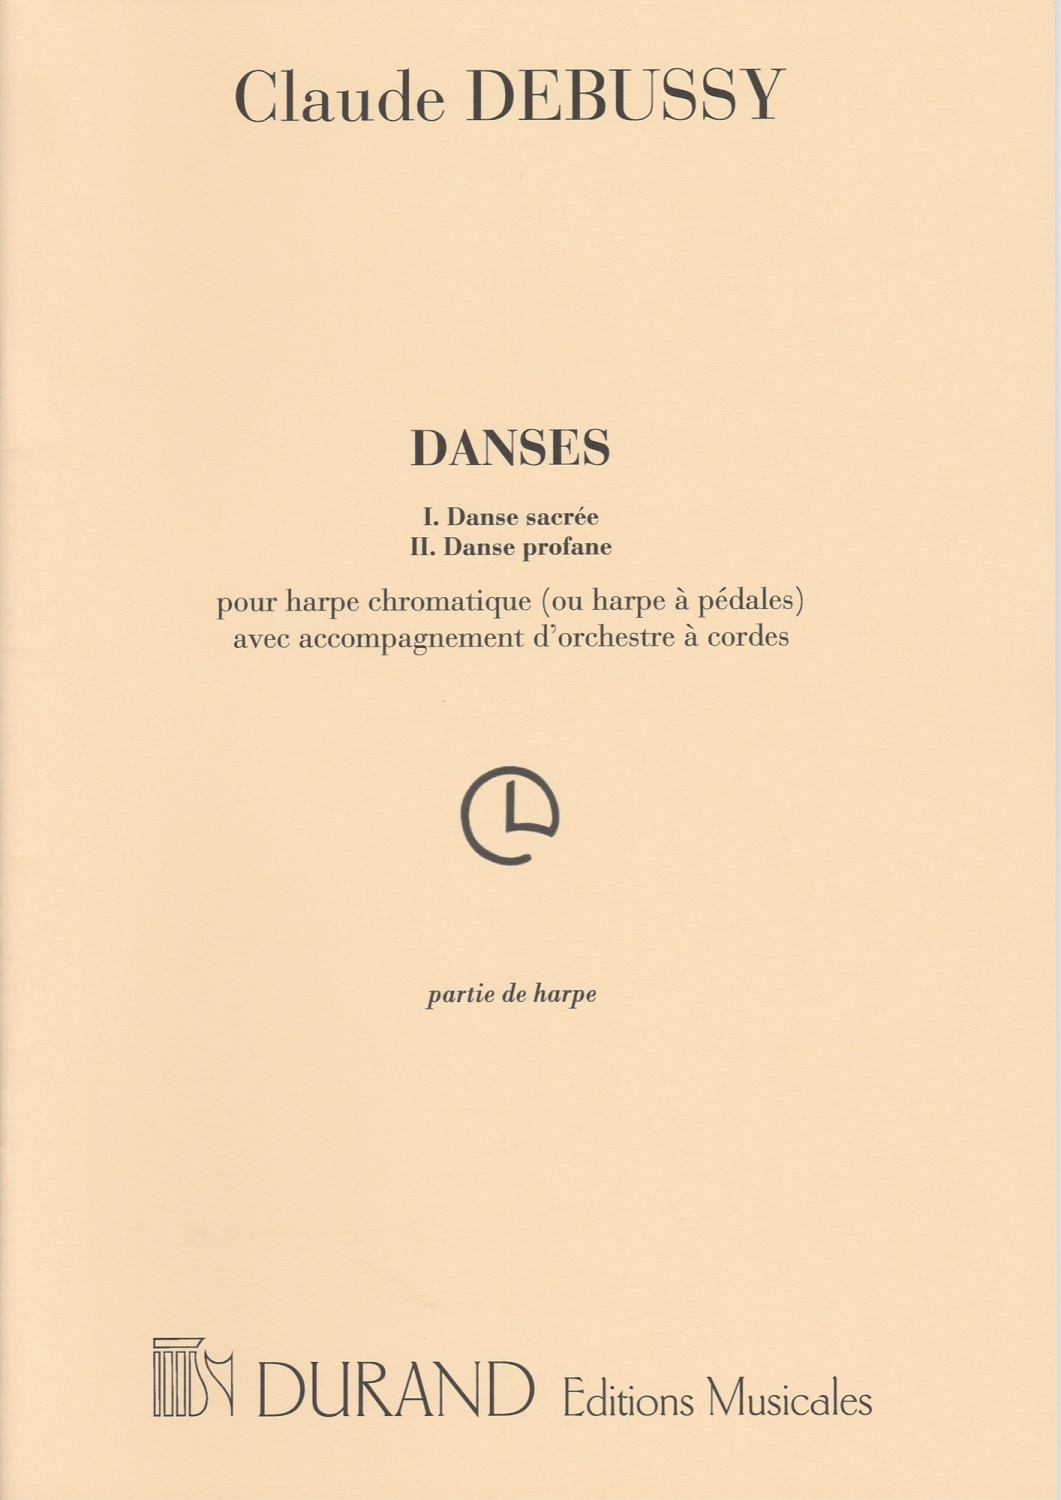 Danses - Claude Debussy